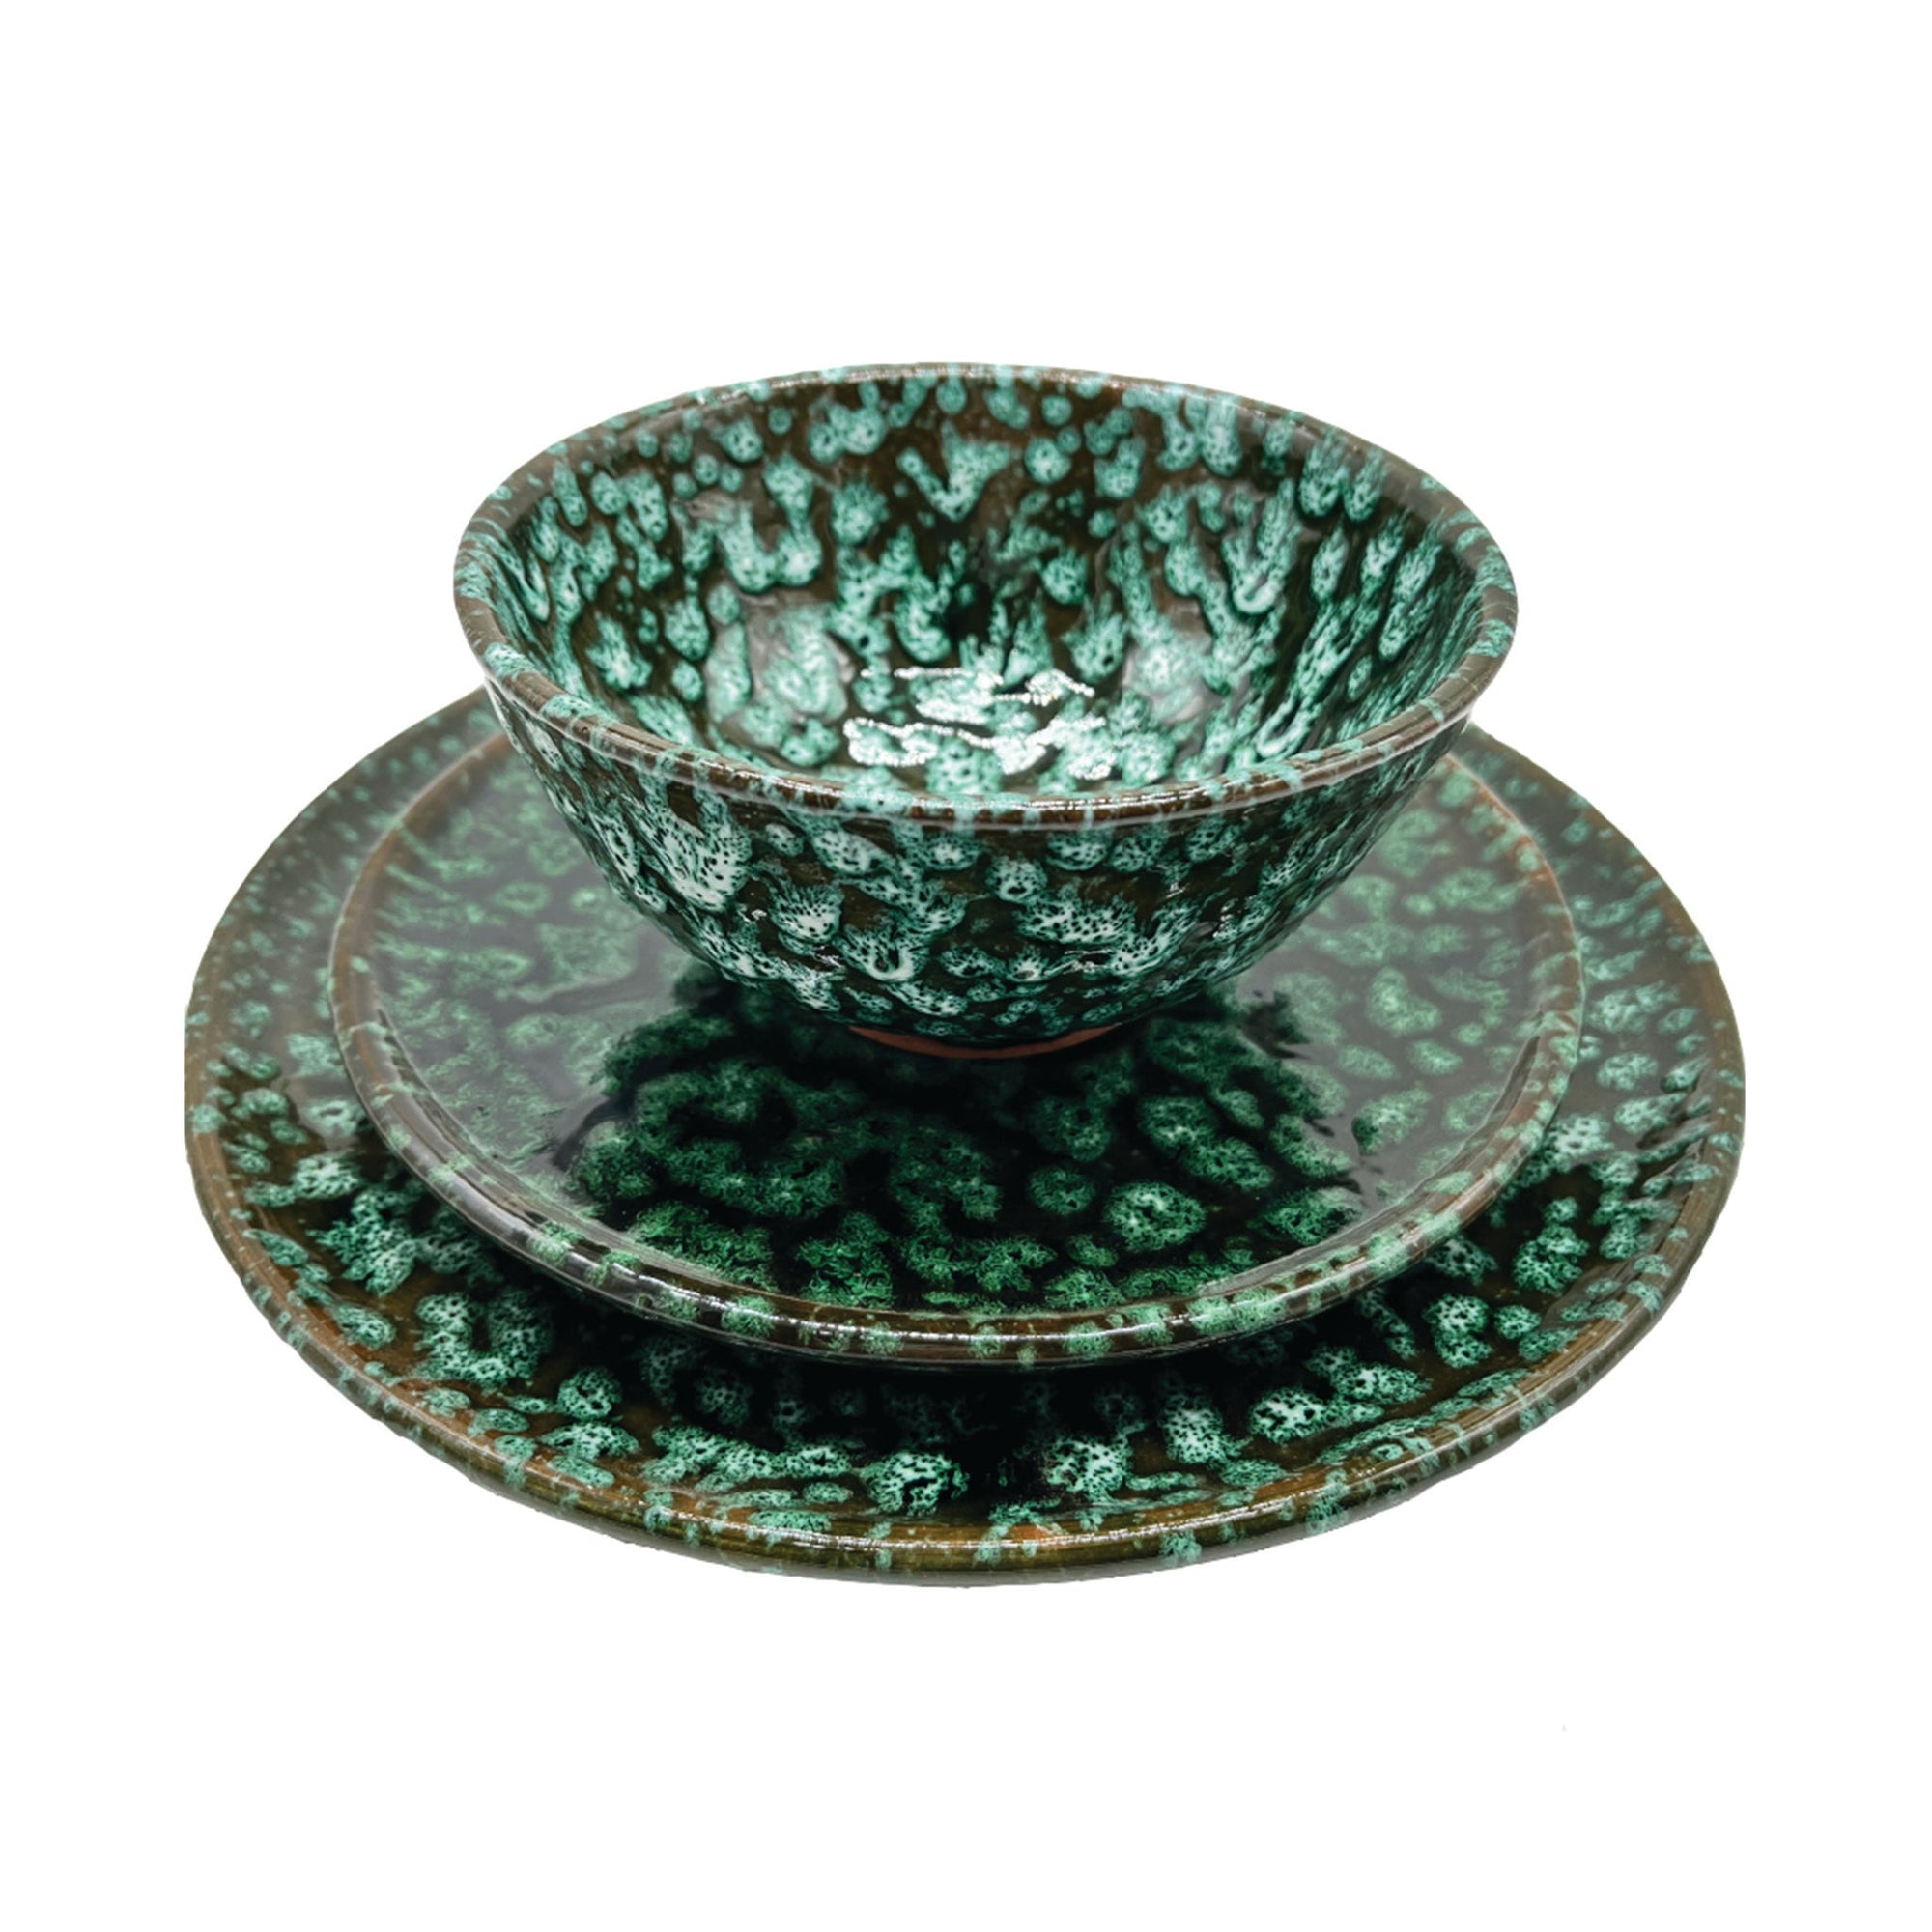 Speckled Ceramic Bowls